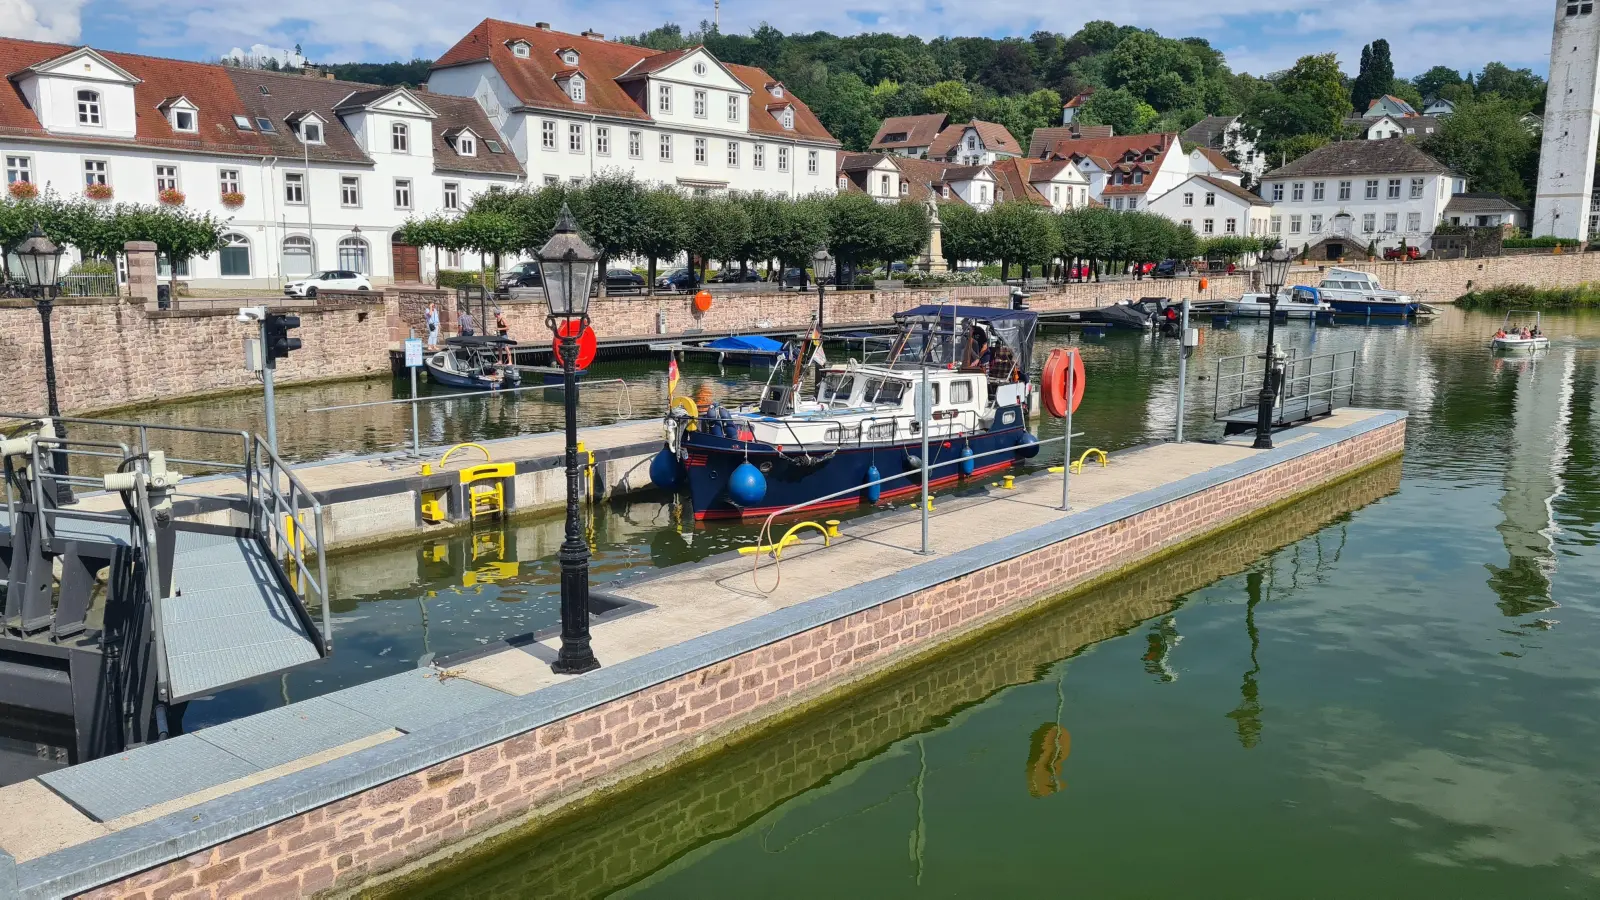 Startpunkt des Dreiländer-Panorama-Wegs: Bad Karlshafen mit dem restaurierten Hafenbecken. (Foto: Peter Vössing)